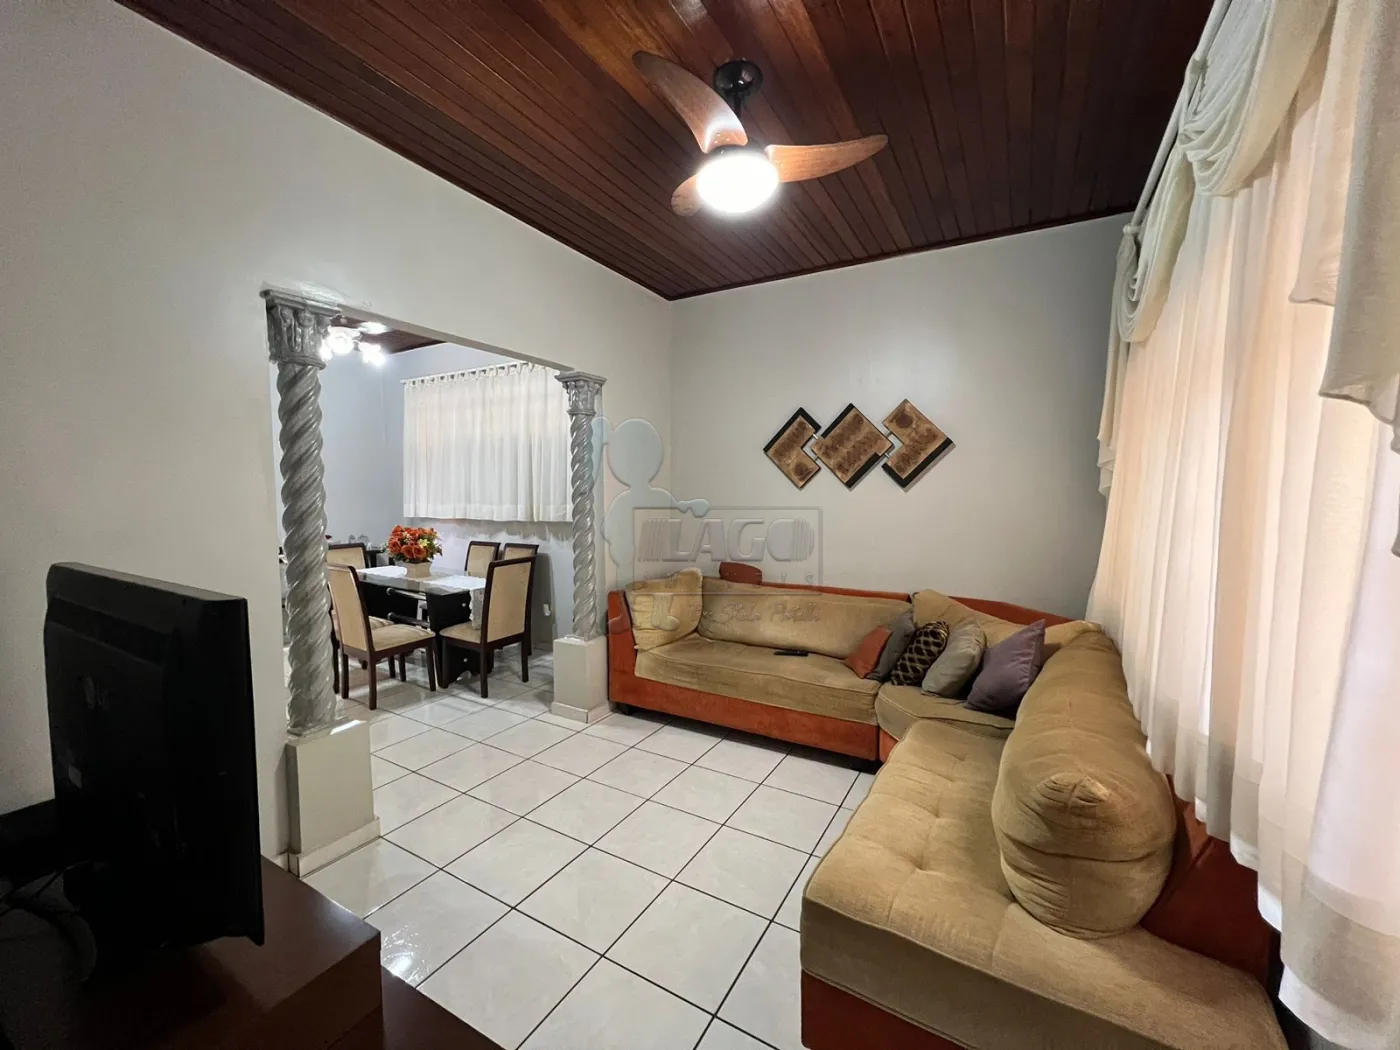 Comprar Casas / Padrão em Ribeirão Preto R$ 480.000,00 - Foto 3